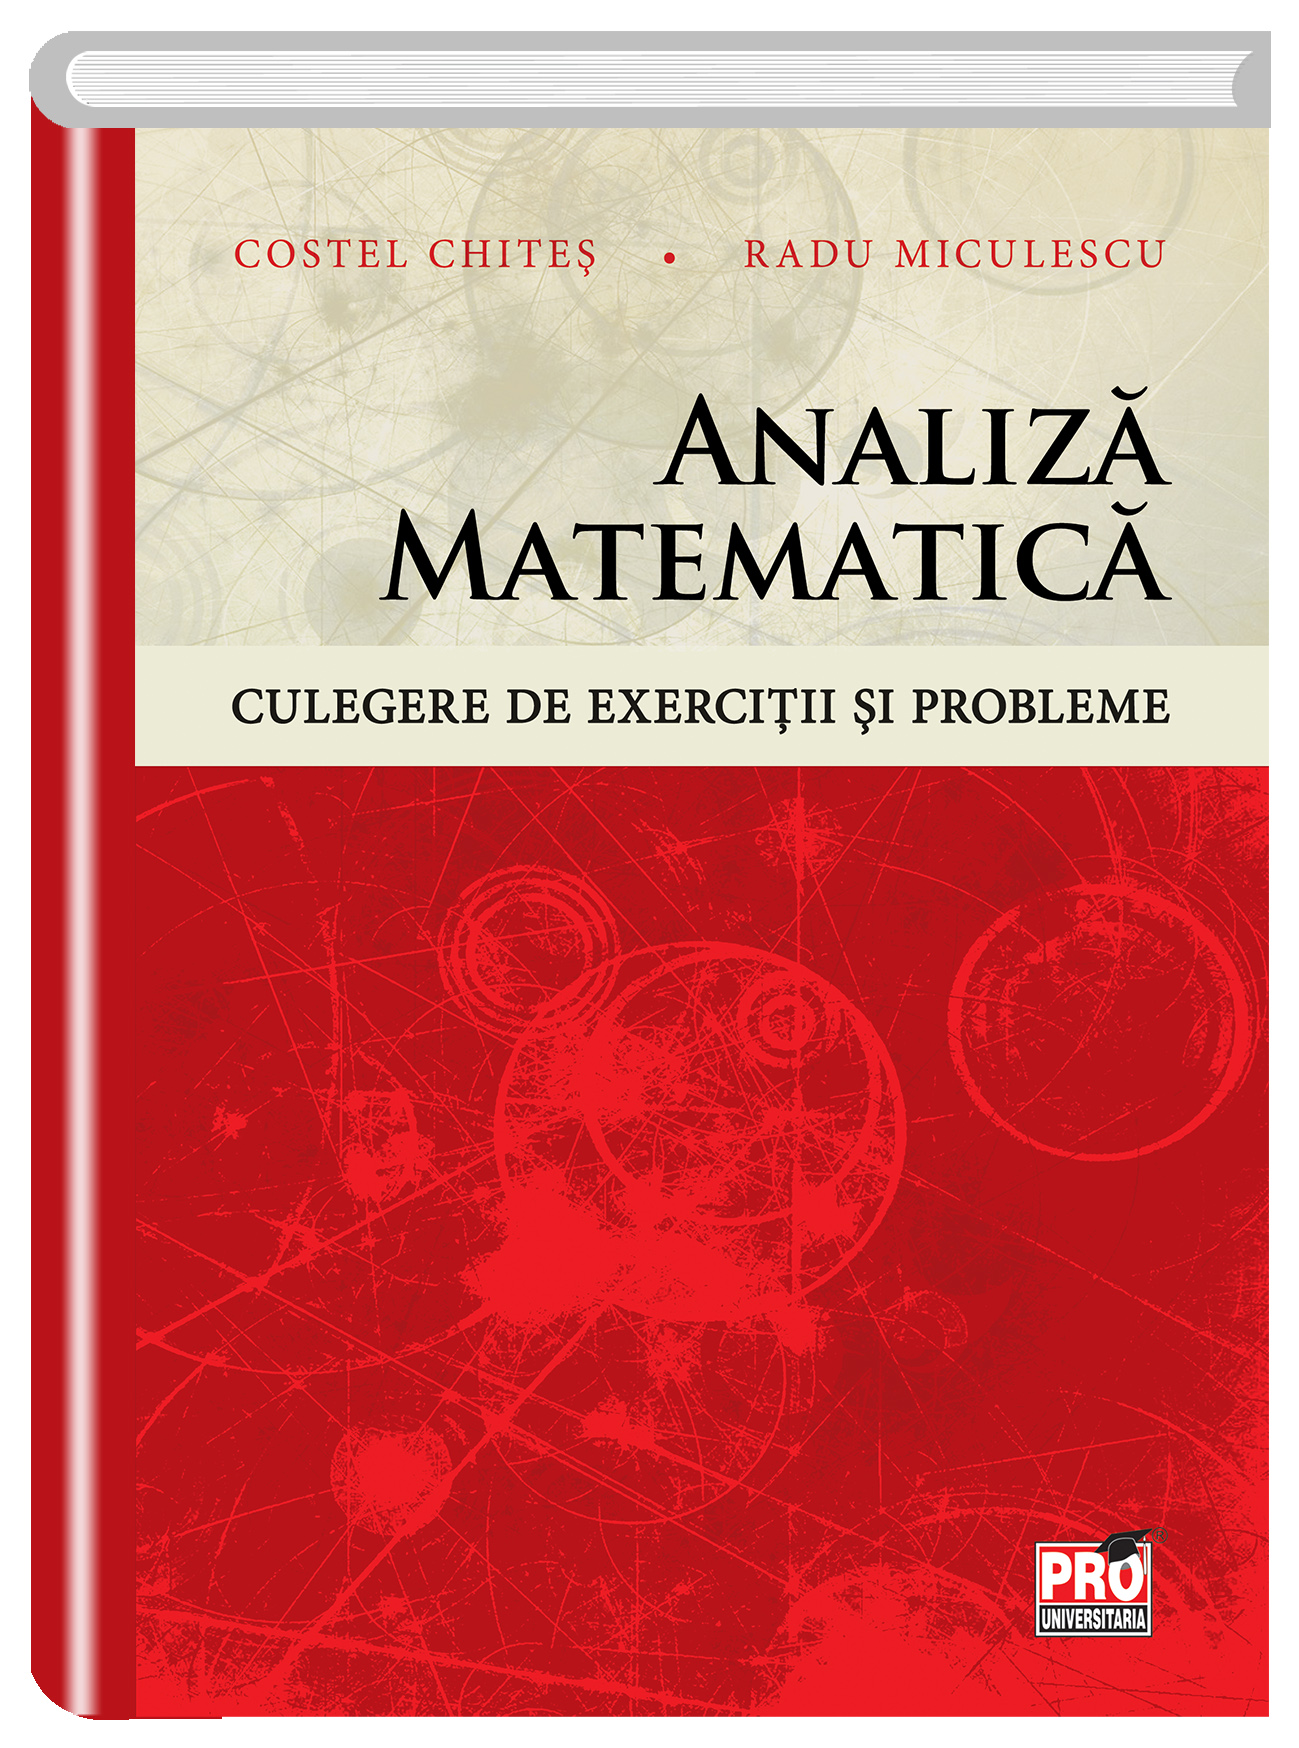 Analiza matematica. Culegere de exercitii si probleme | Costel-Dobre Chites, Radu Miculescu carturesti 2022